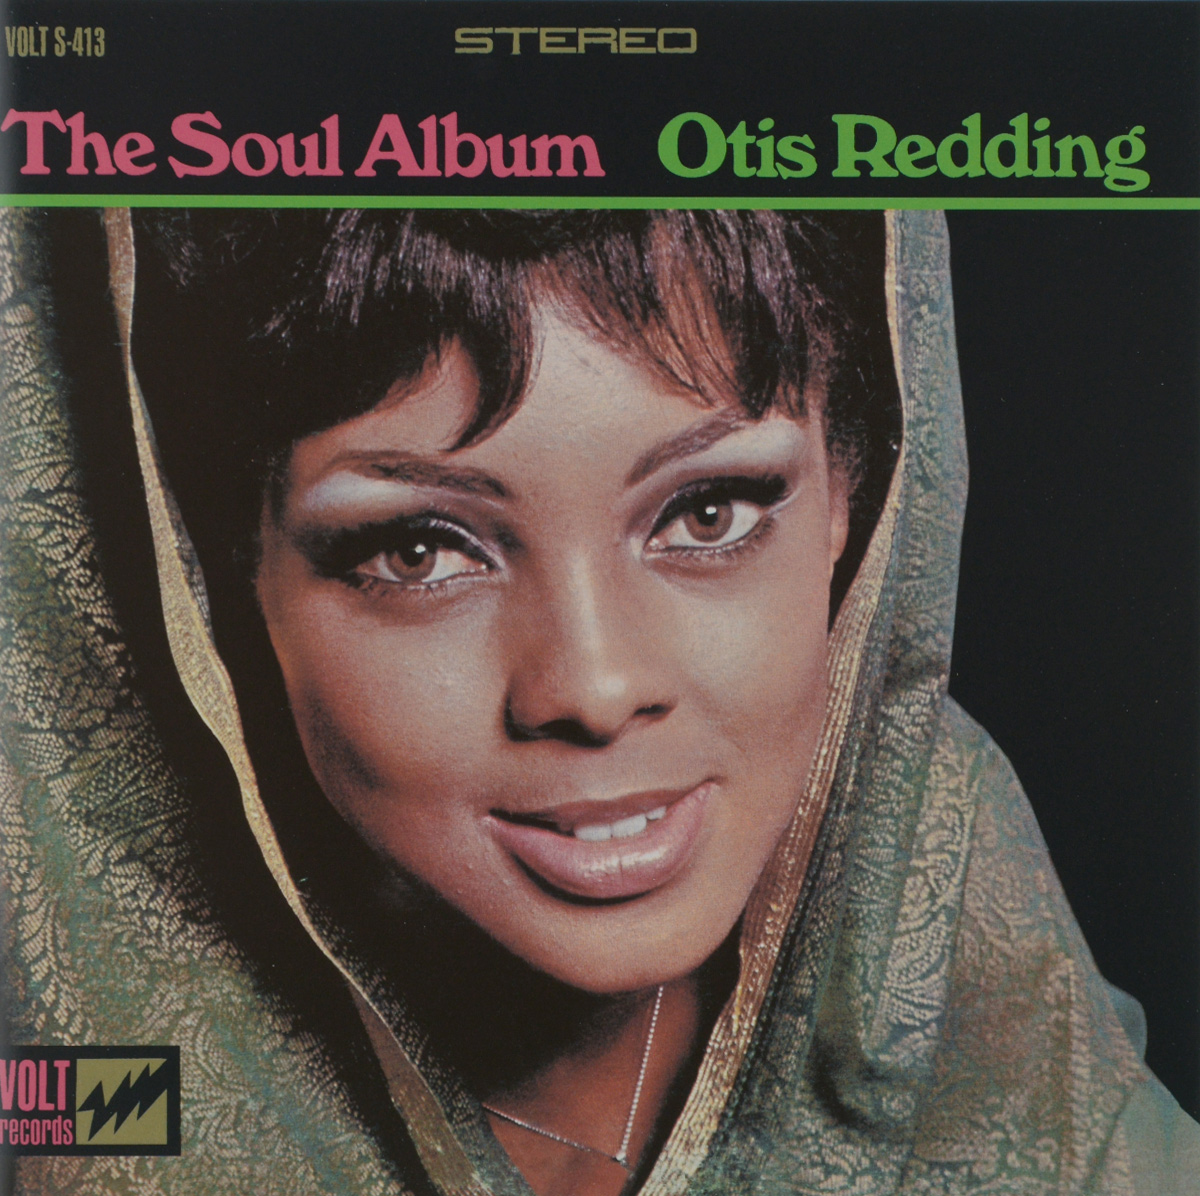 Otis Redding. The Soul Album